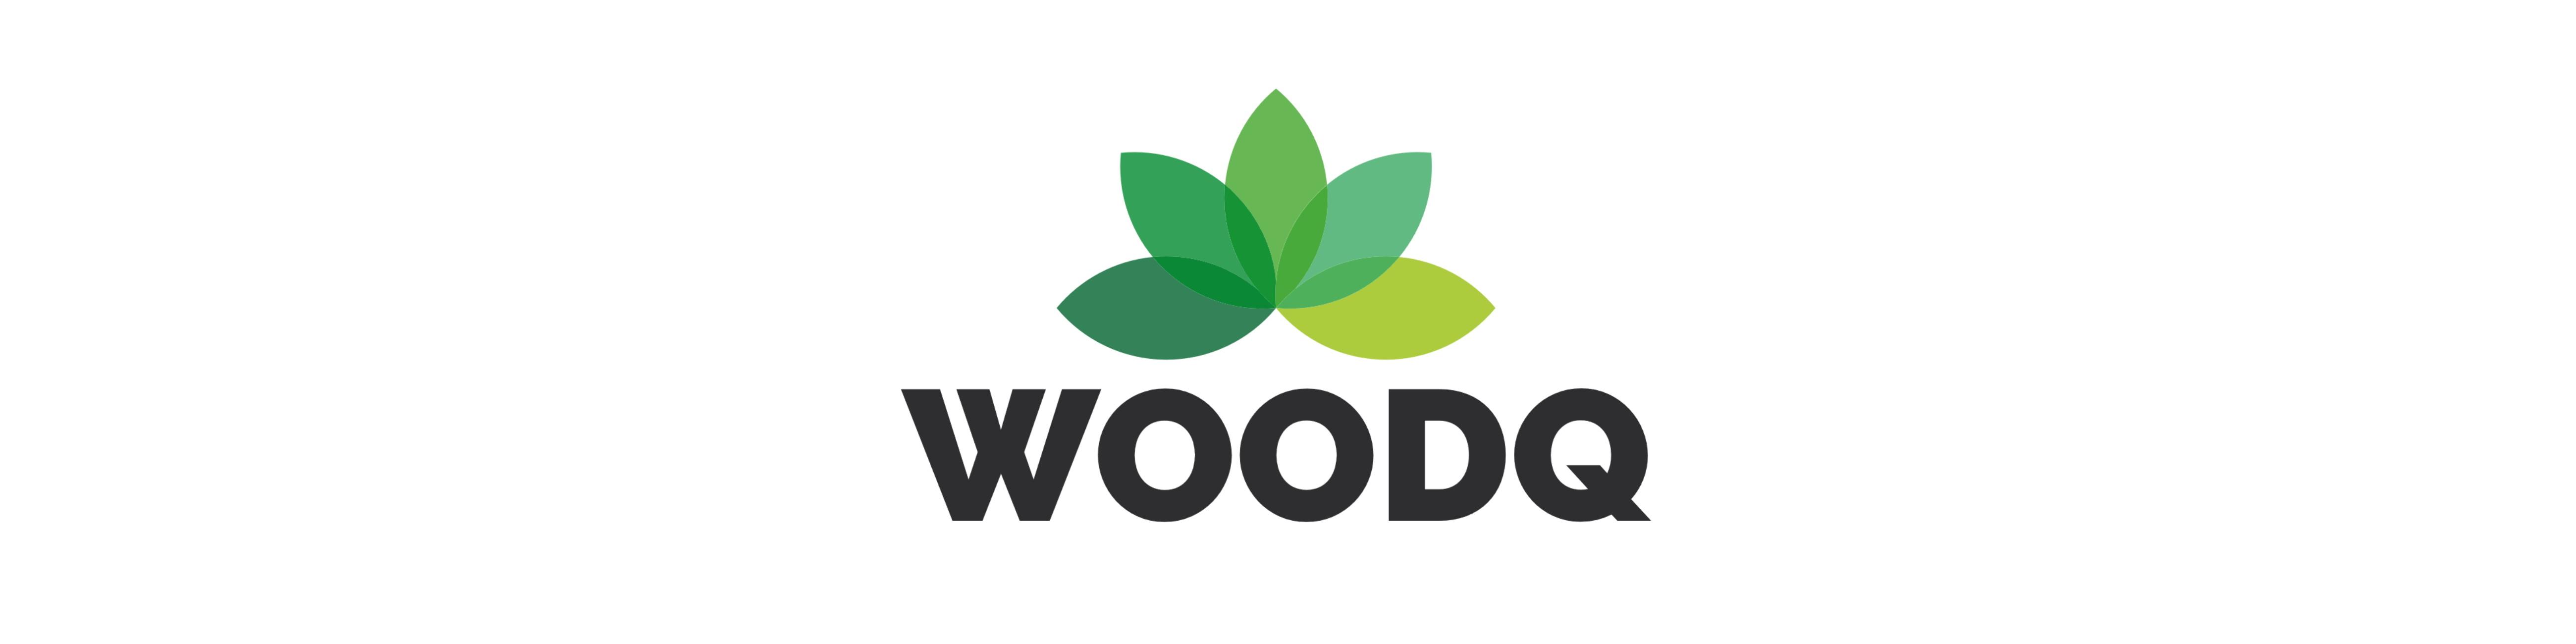 Woodq / startup von Köln / Background